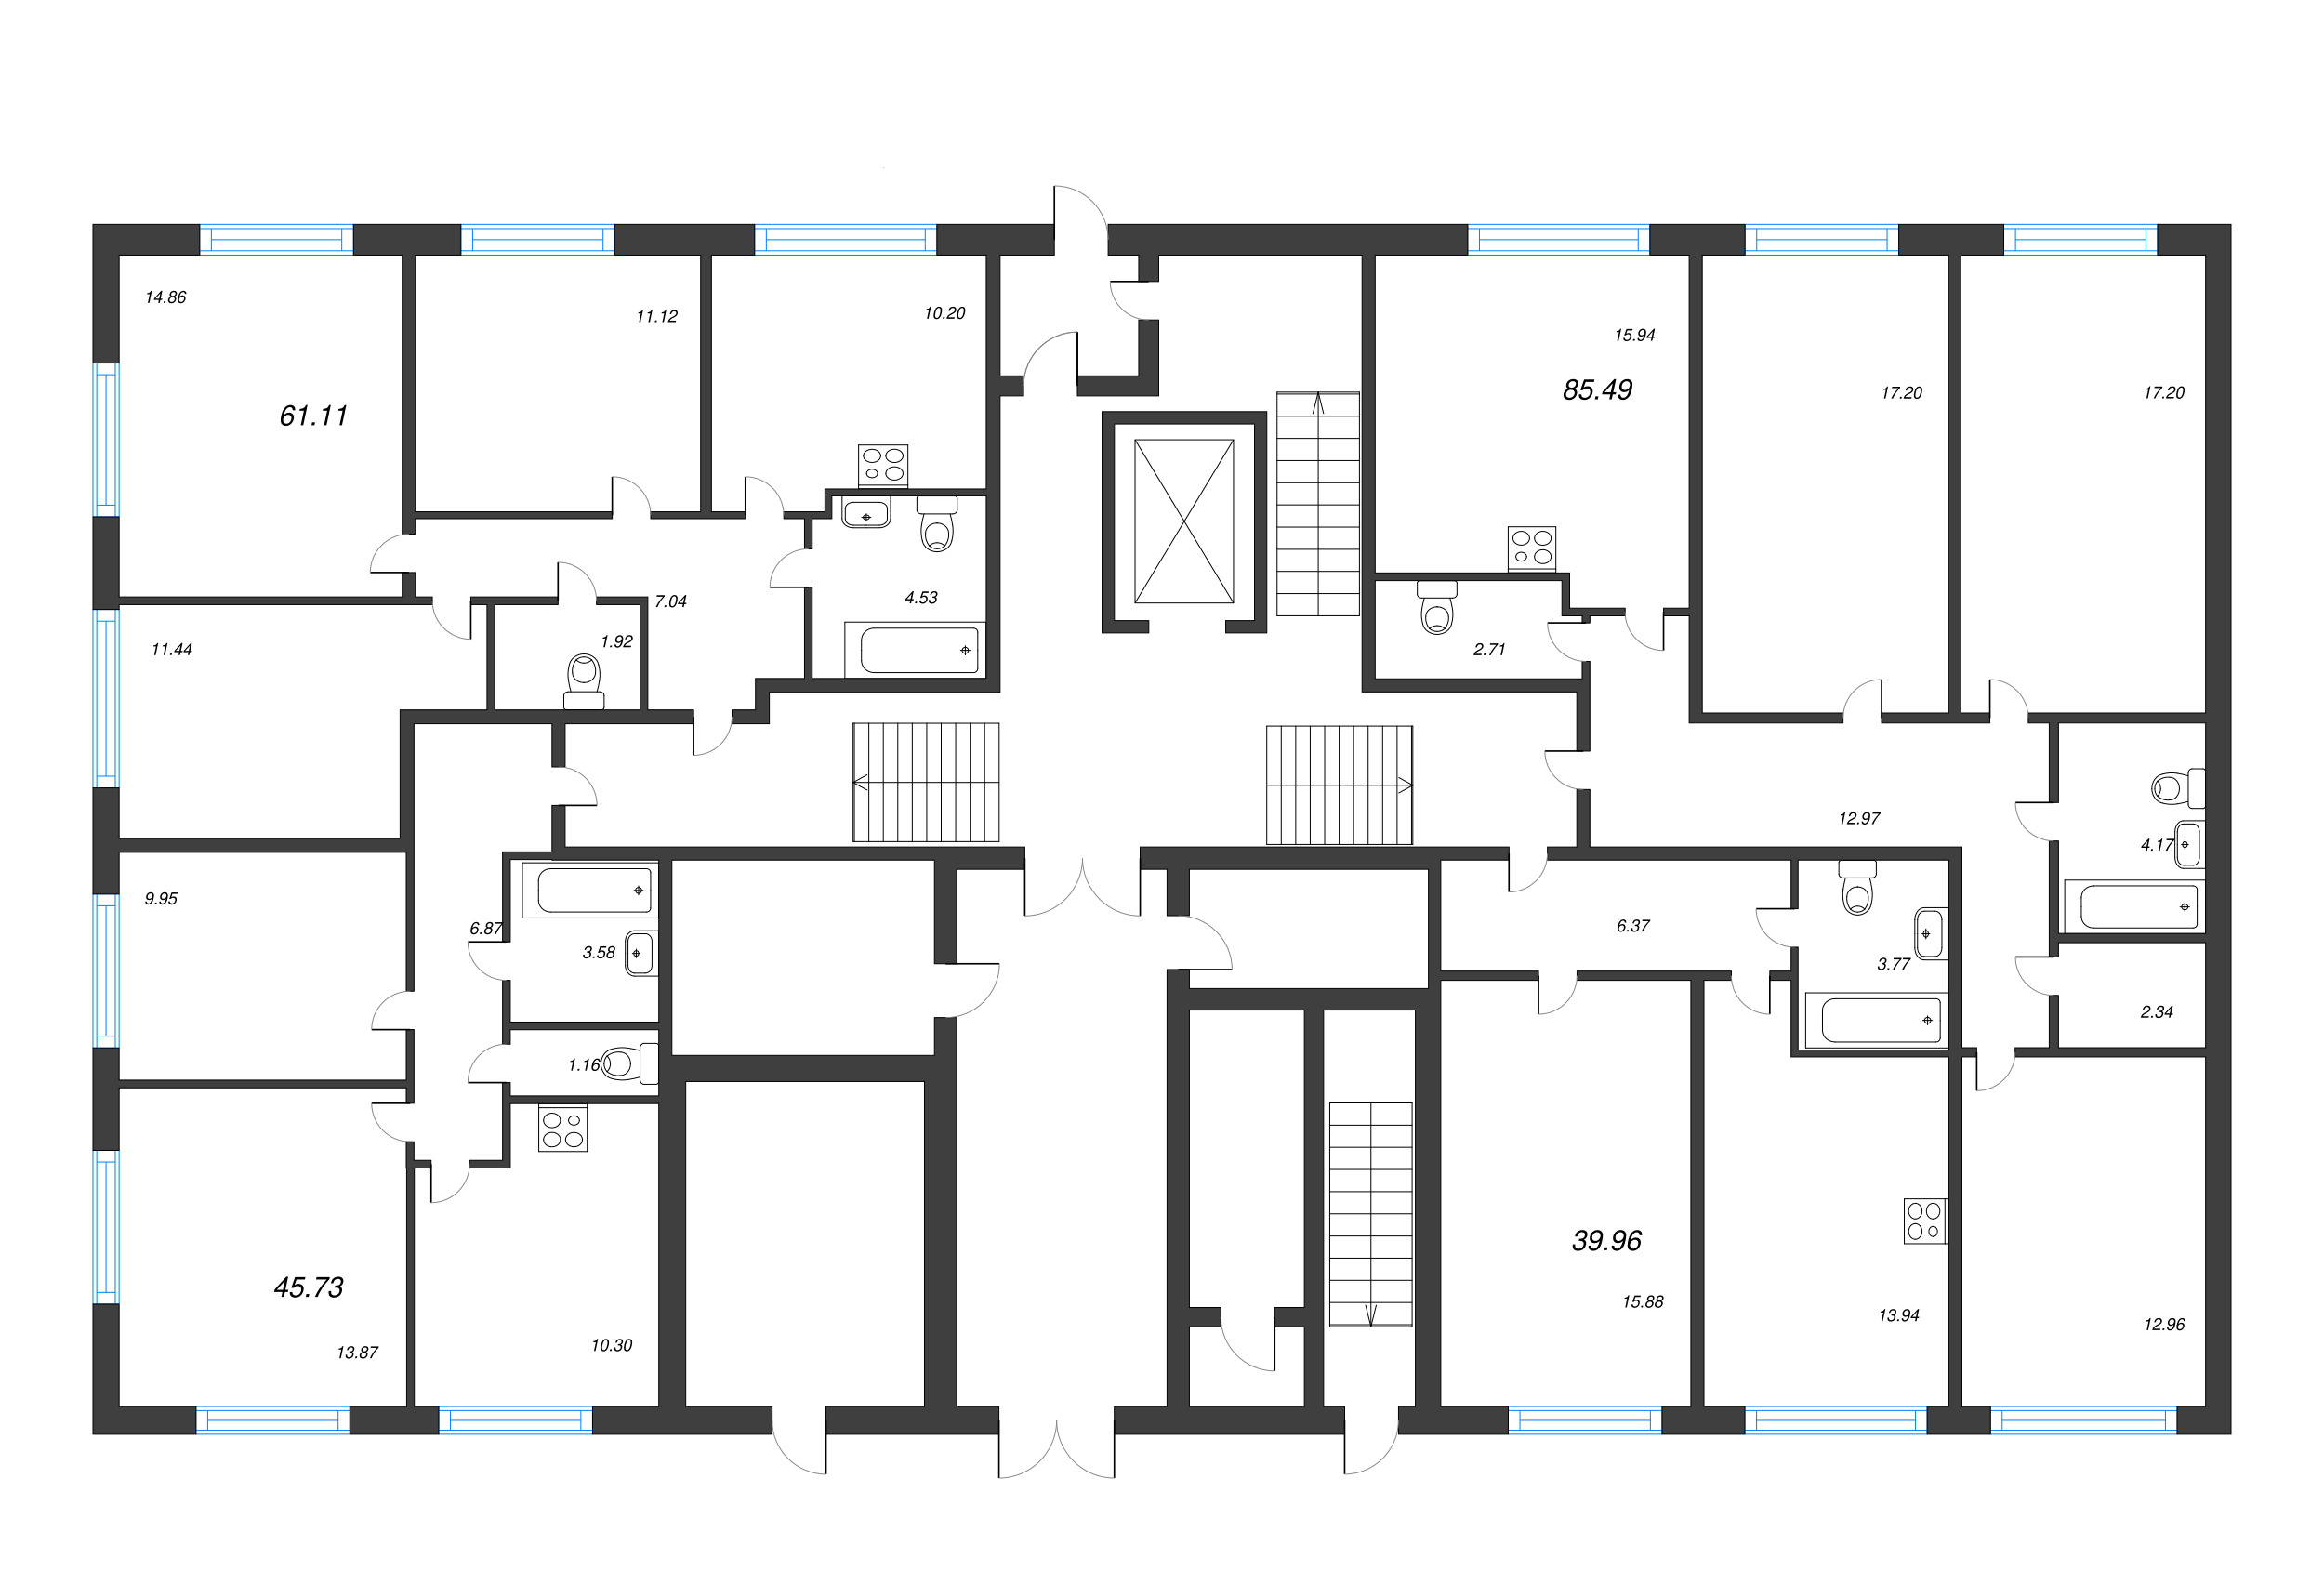 4-комнатная (Евро) квартира, 85.49 м² в ЖК "OKLA" - планировка этажа